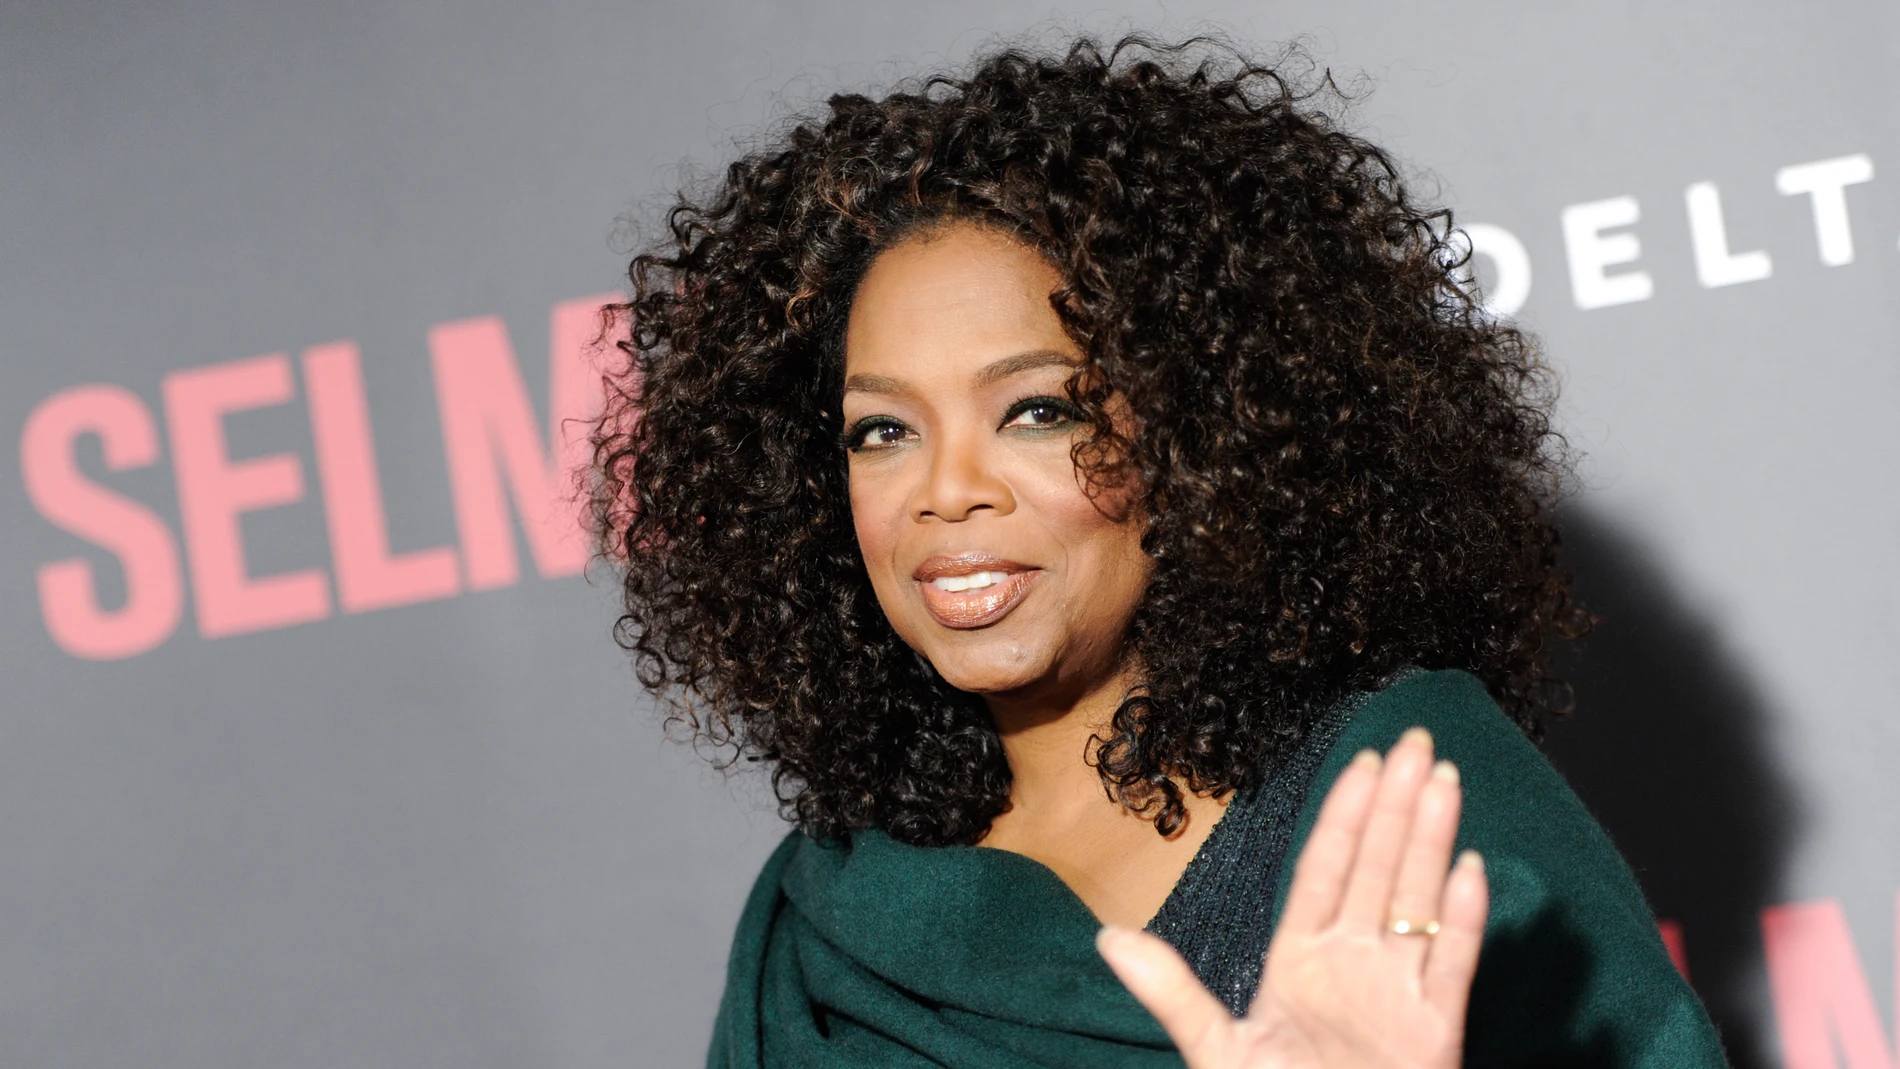 Oprah Winfrey revela que fue violada repetidas veces cuando era menor